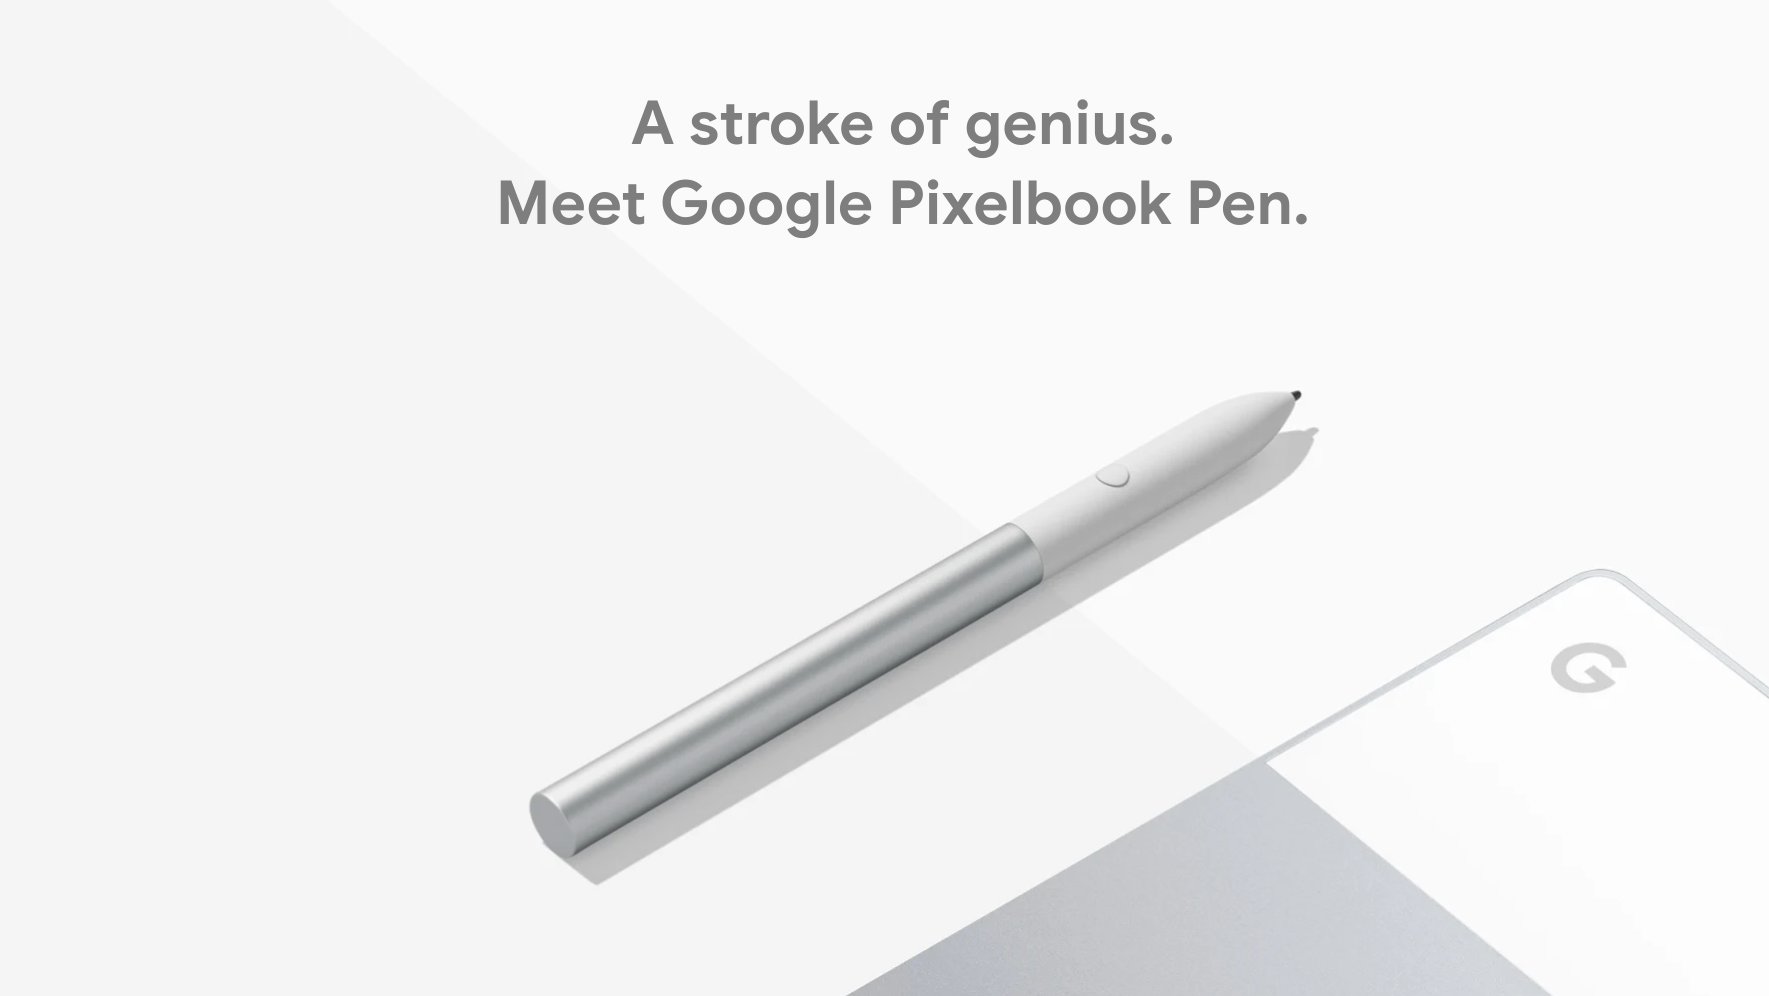 Betjening mulig Indien toilet The Pixelbook Go does not support the Pixelbook Pen